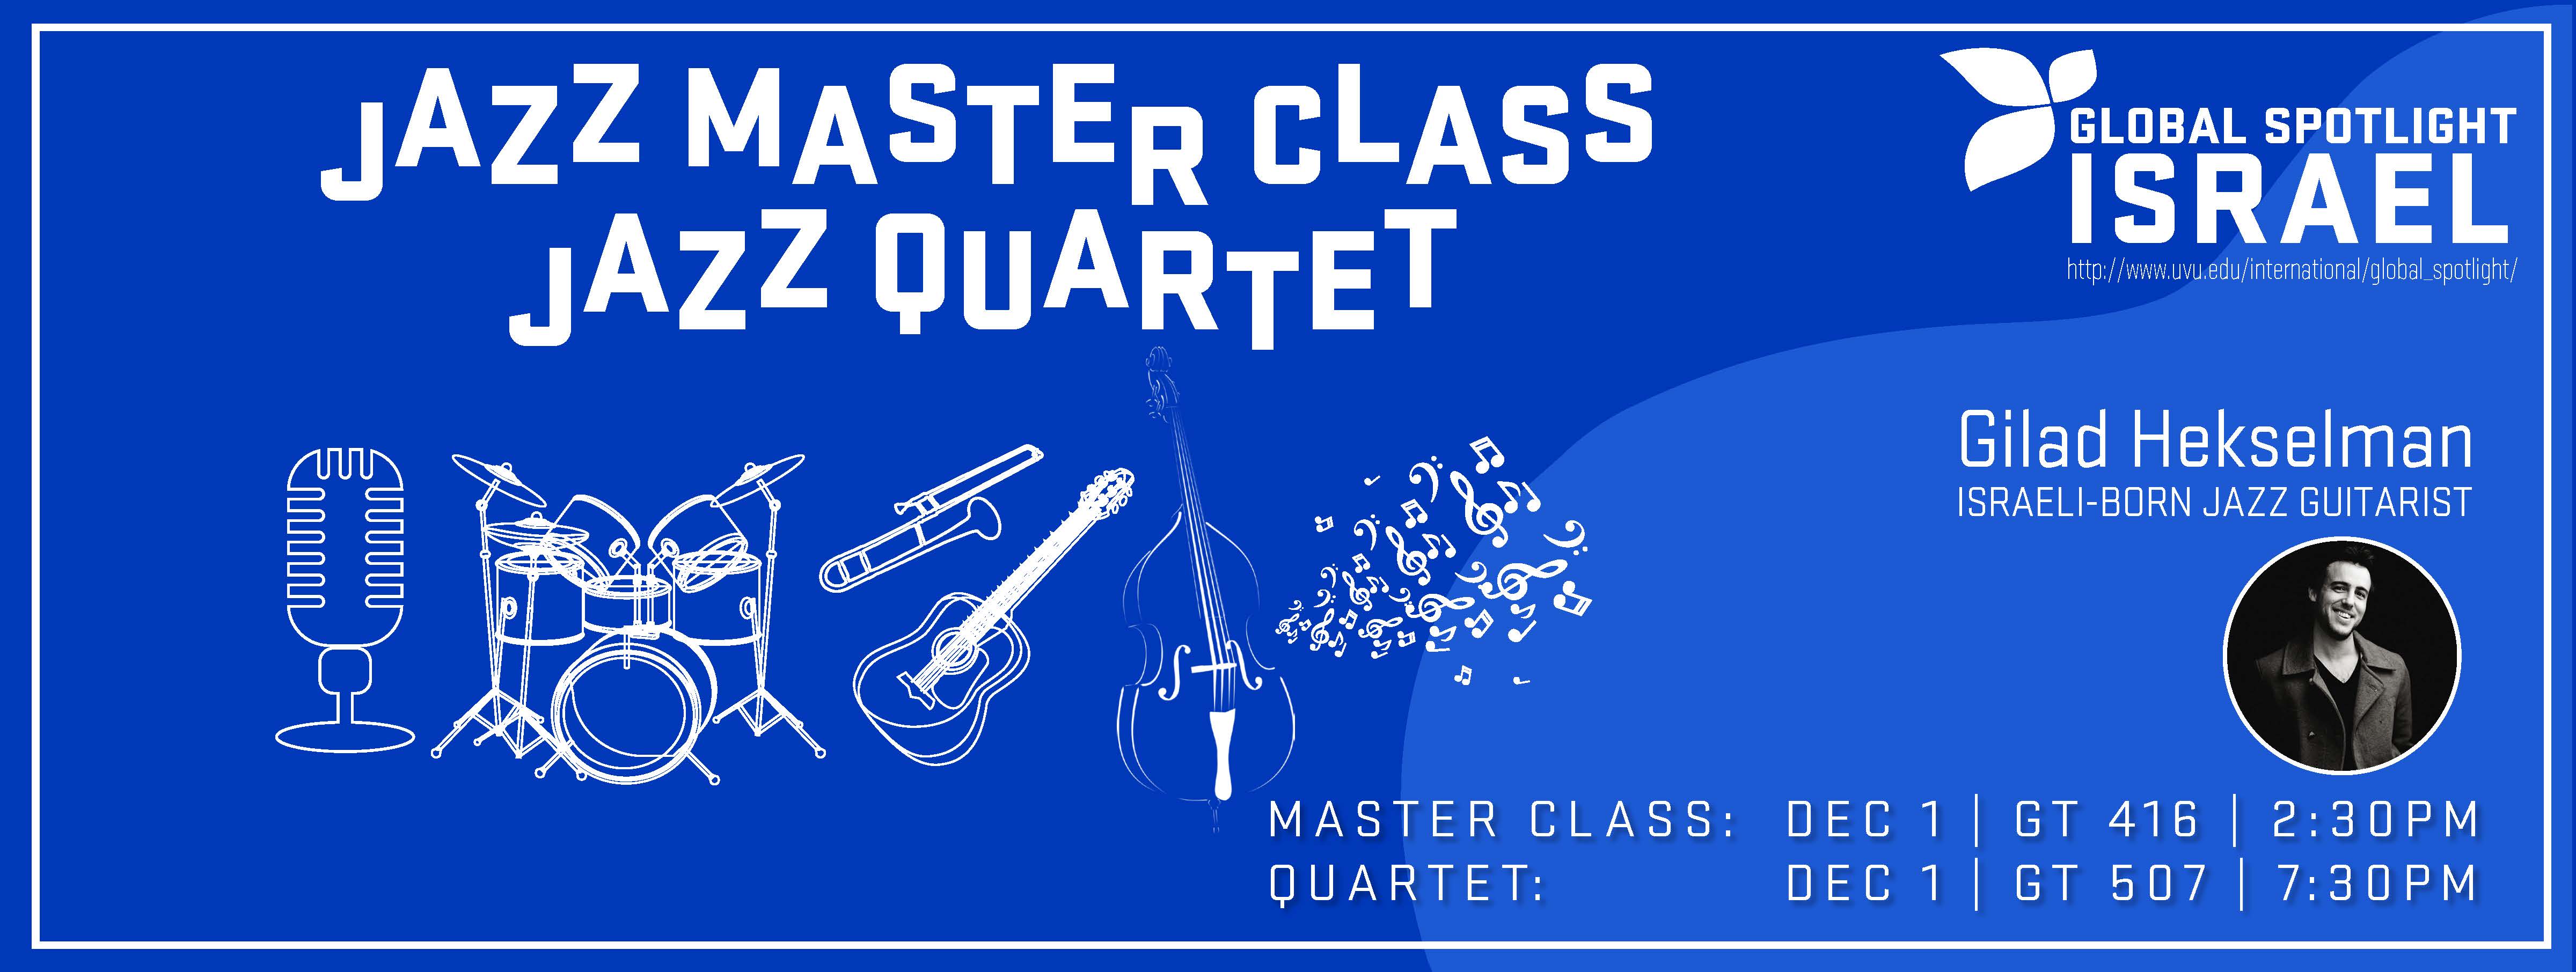 Jazz Master Class Jazz Quartet Banner